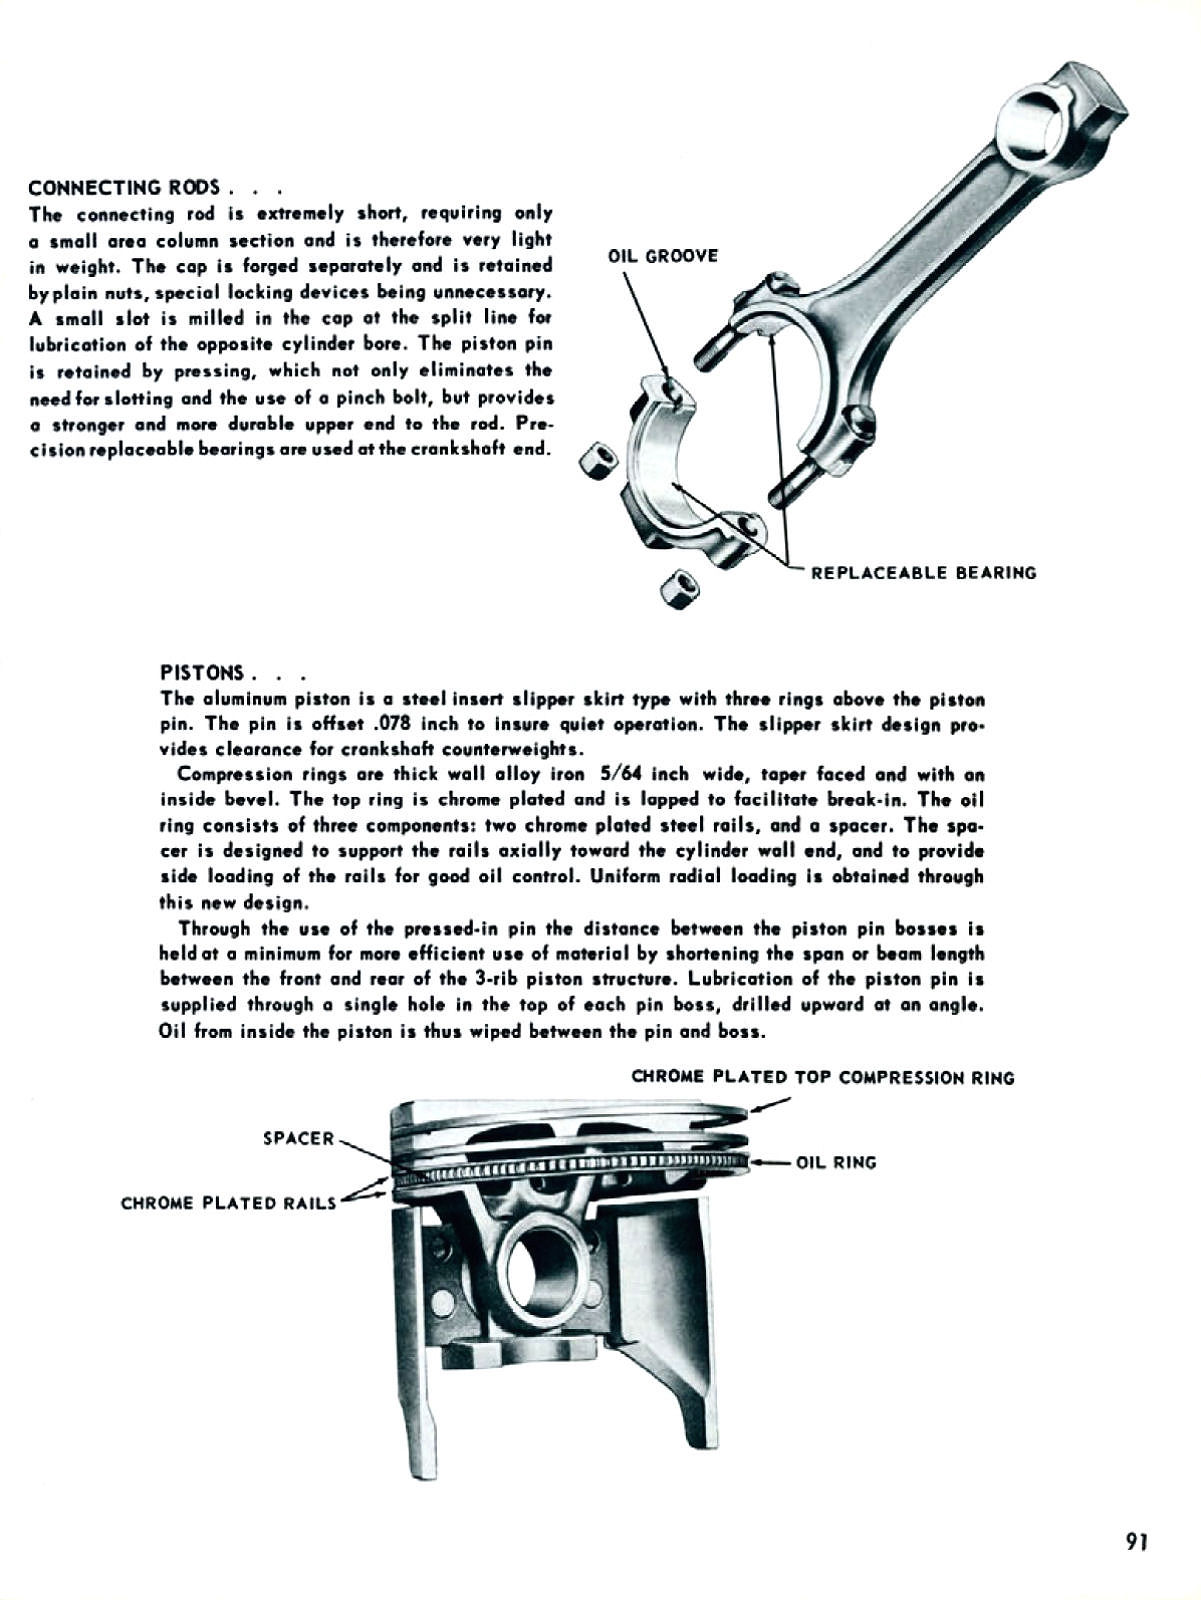 1955_Chevrolet_Truck_Engineering_Features-091